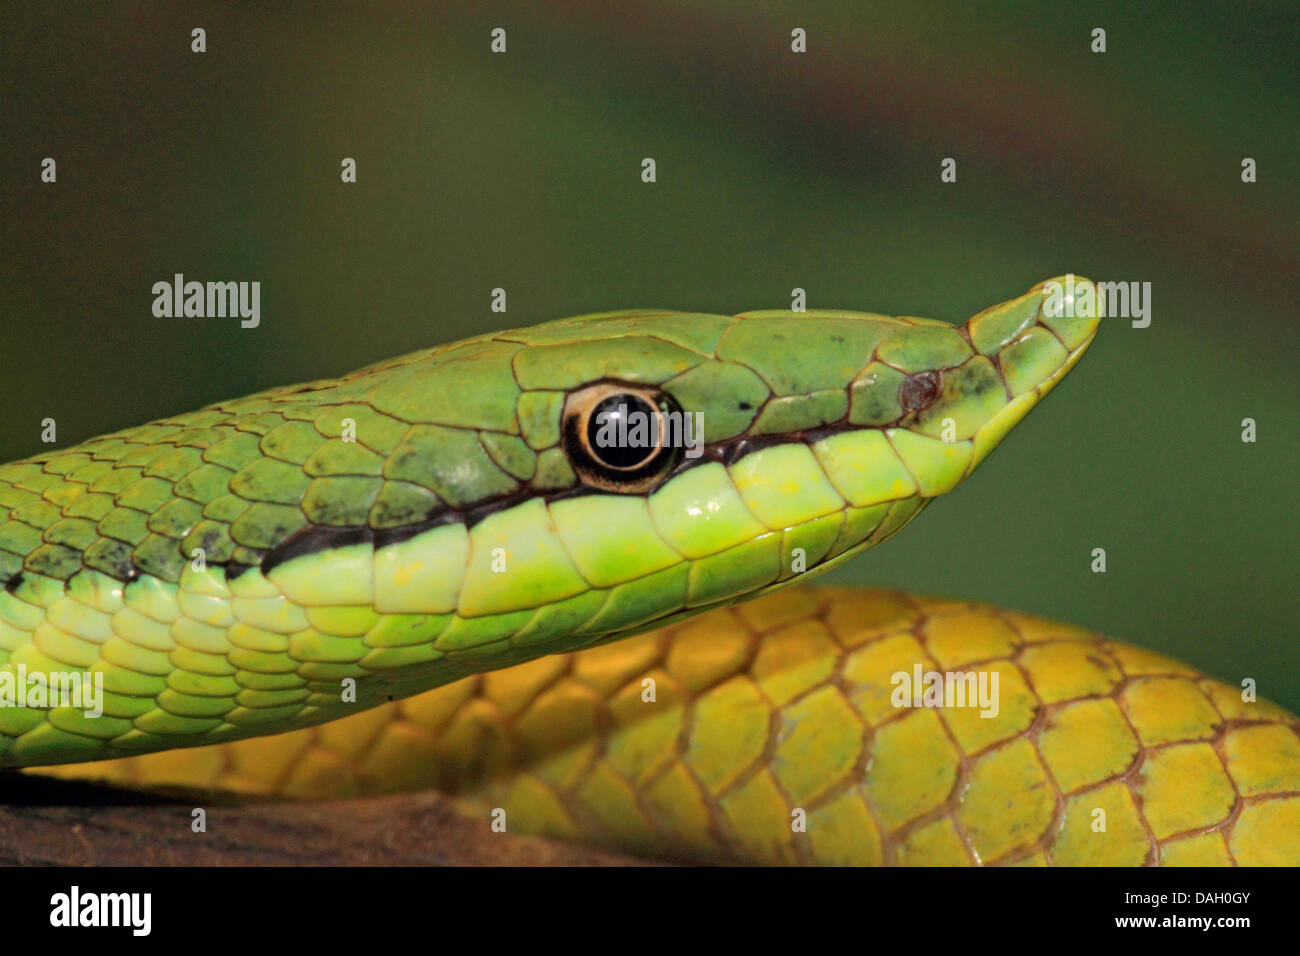 Argentinian Long-nosed Tree Snake (Philodryas baroni), portrait Stock Photo